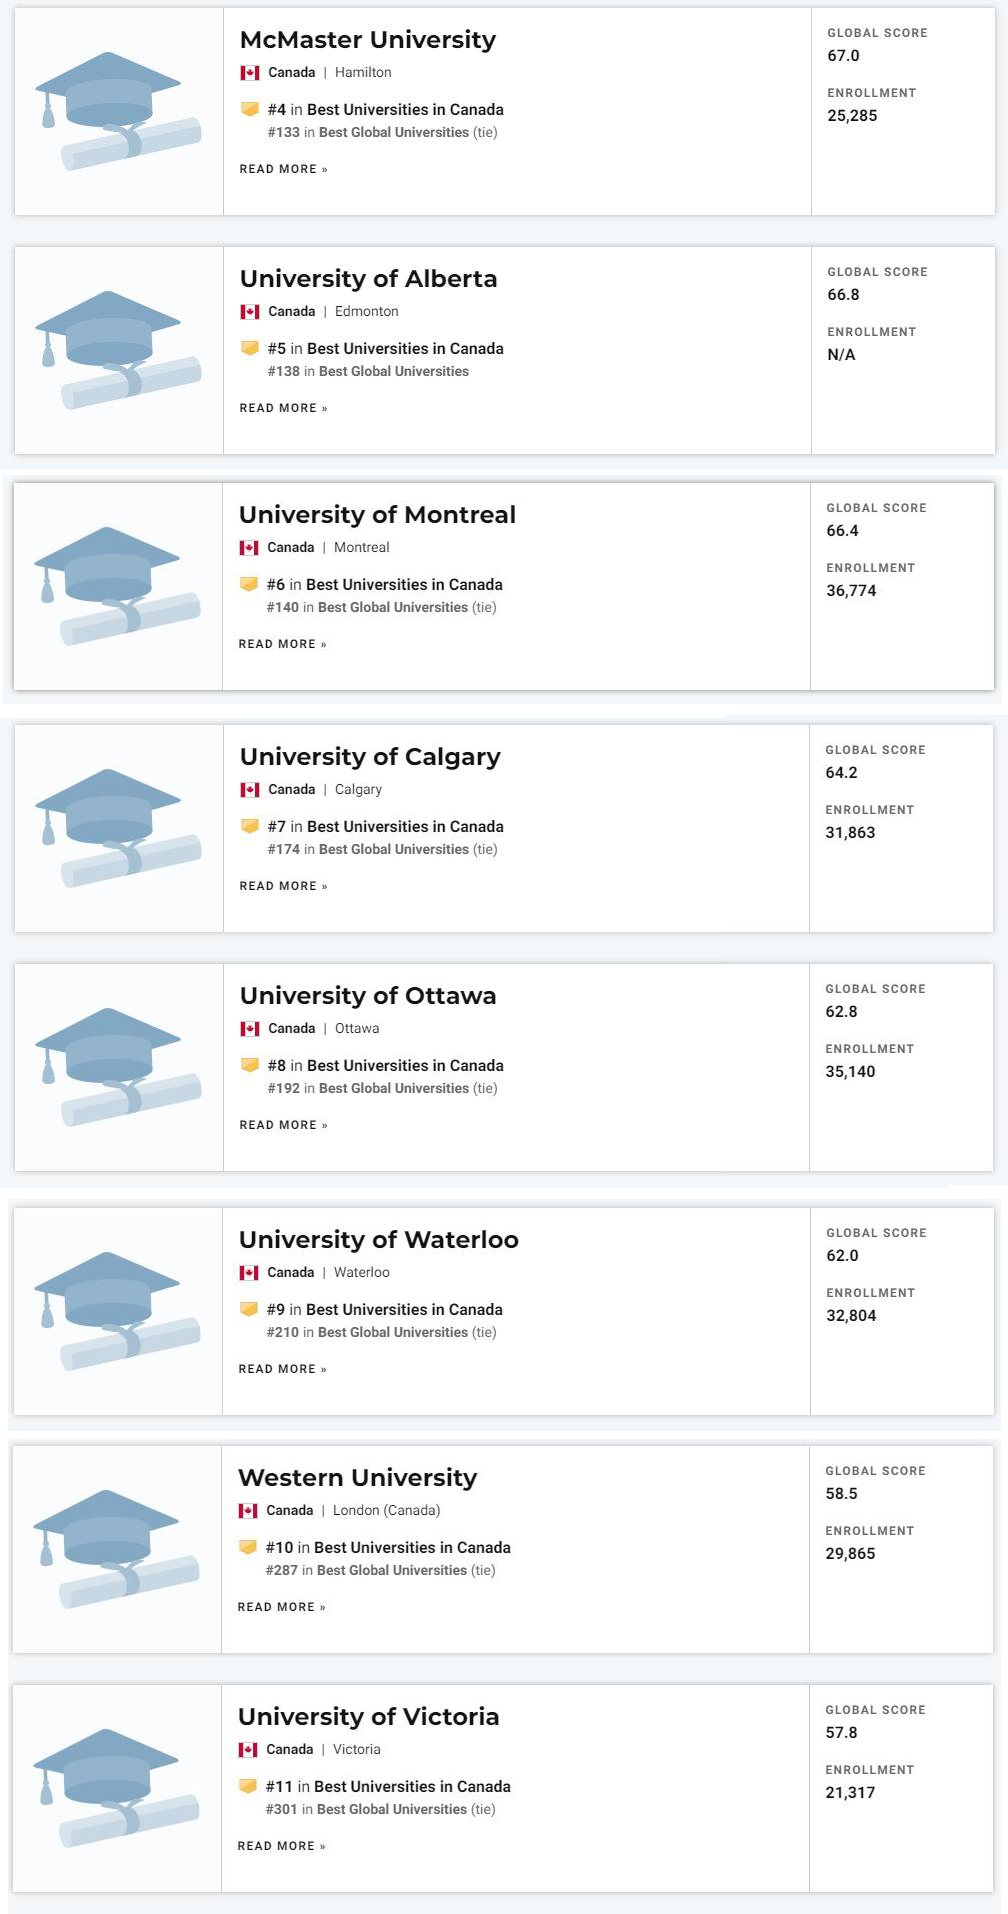 《美国新闻》-《2021年全球最佳大学排行榜》-加拿大大学排名4-11.jpg